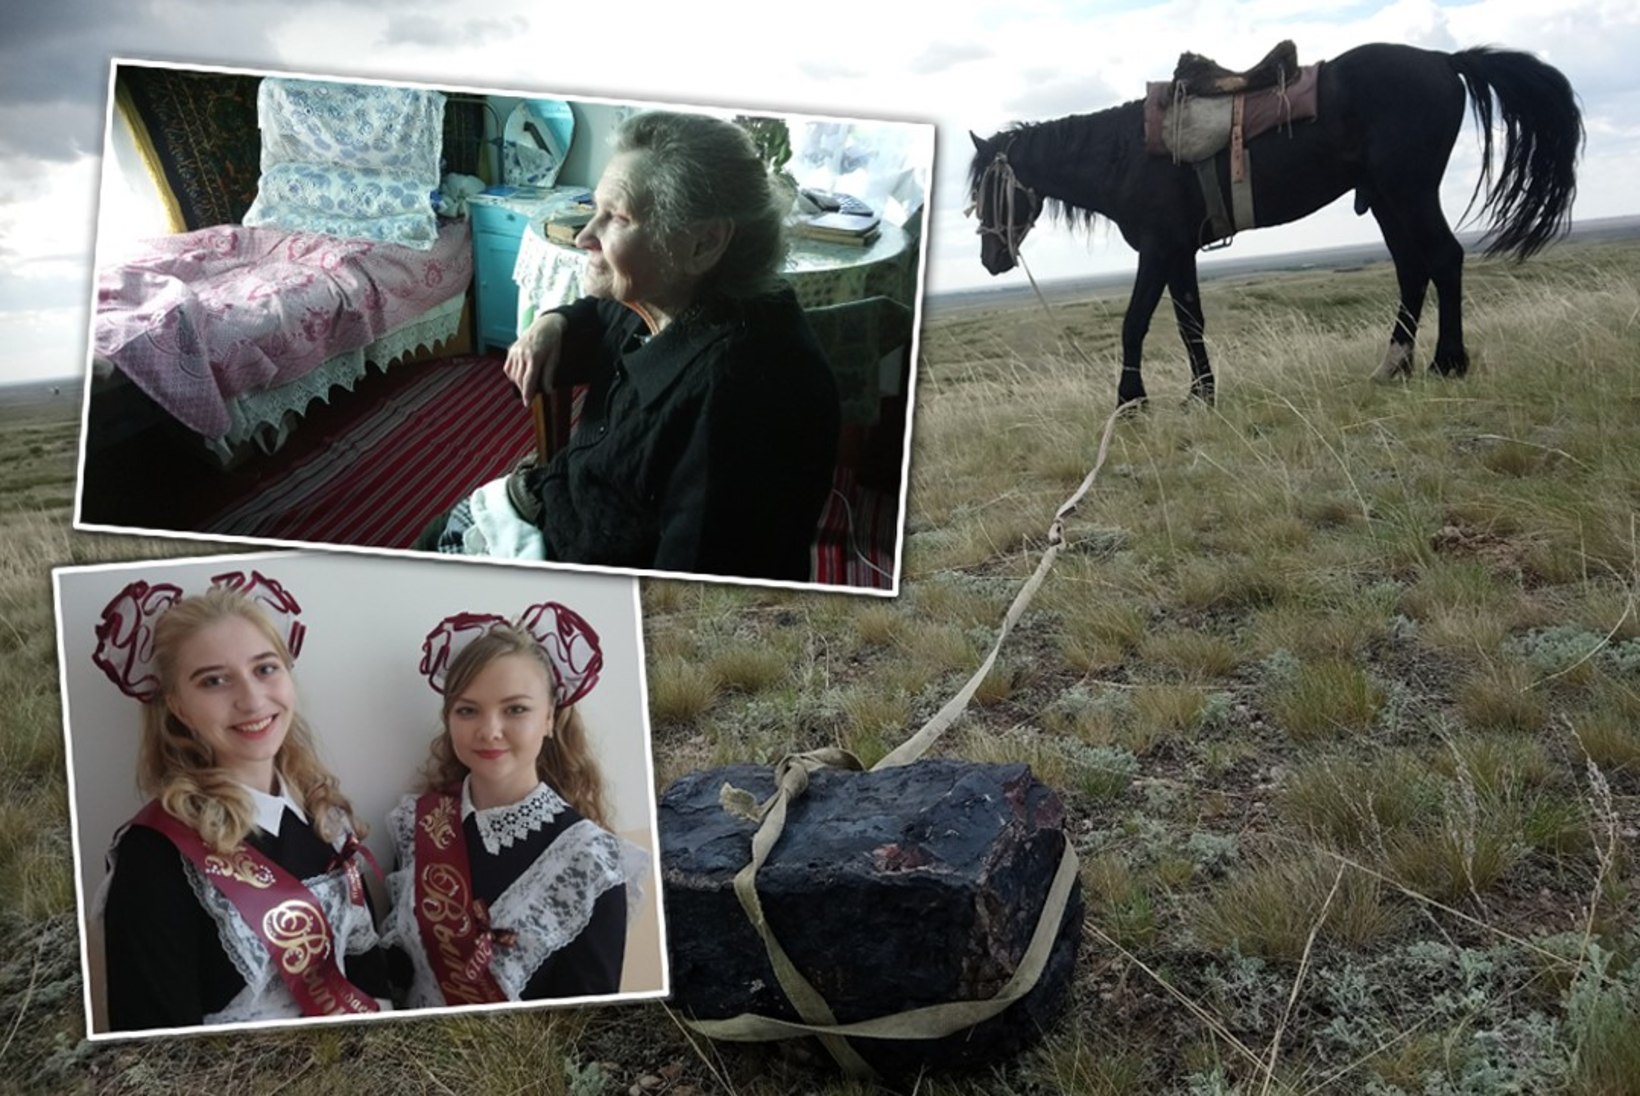 VAATA FILMI AINULT ÕHTULEHES! | MÄLESTUSTE VALGEL: kuidas elavad viimased eestlased kauges Kasahstani külas?